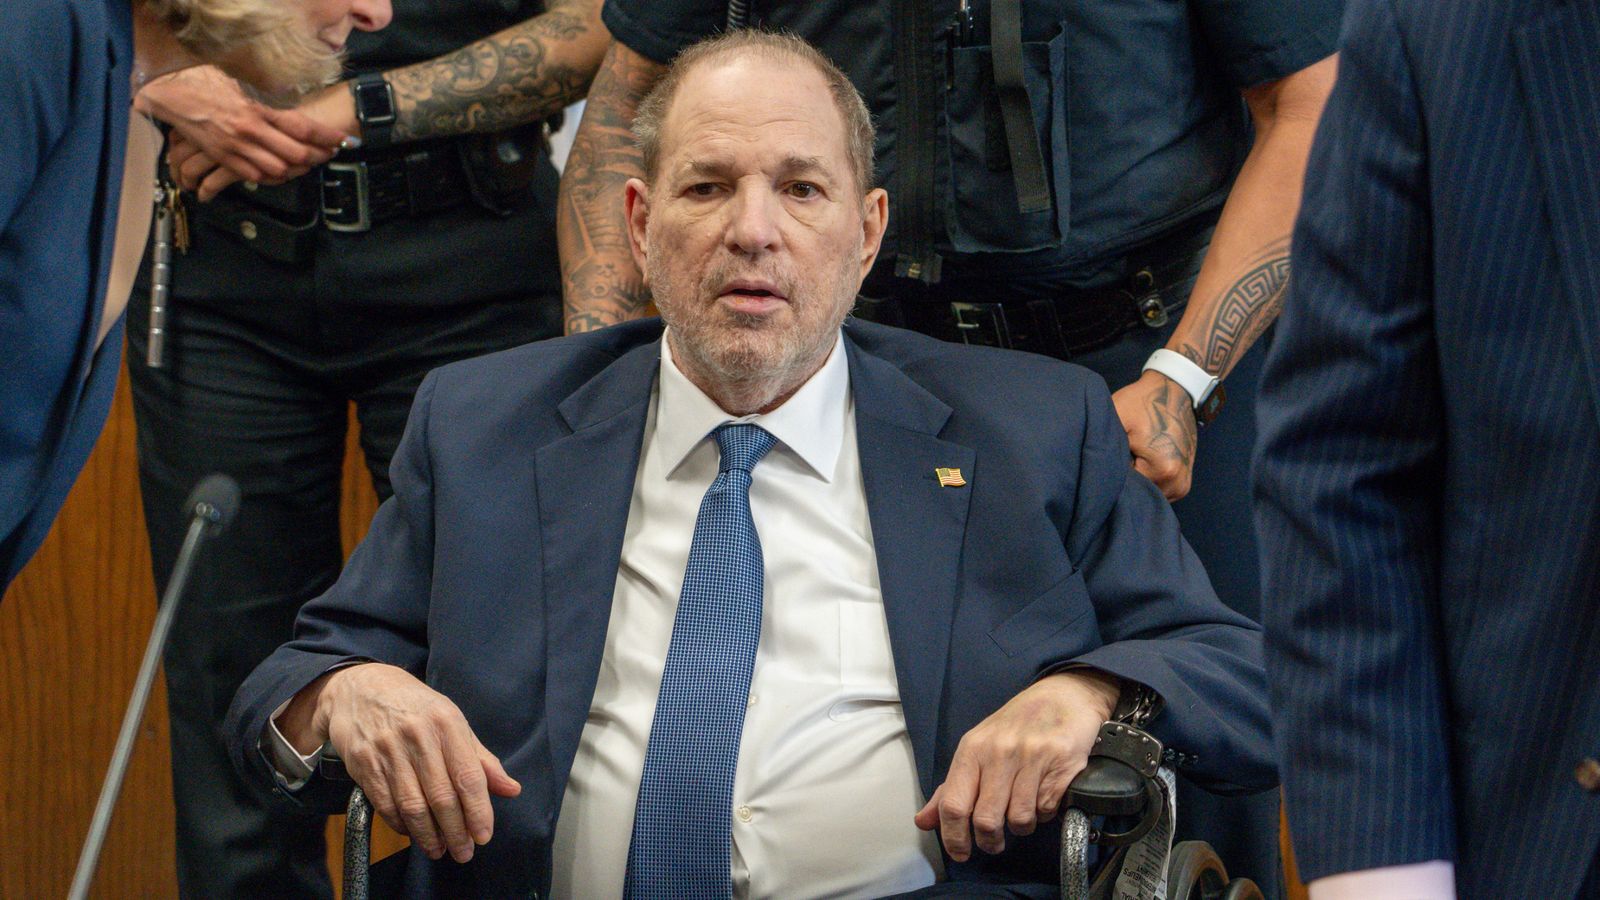 Harvey Weinstein back in court as prosecutors seek retrial after rape conviction overturned